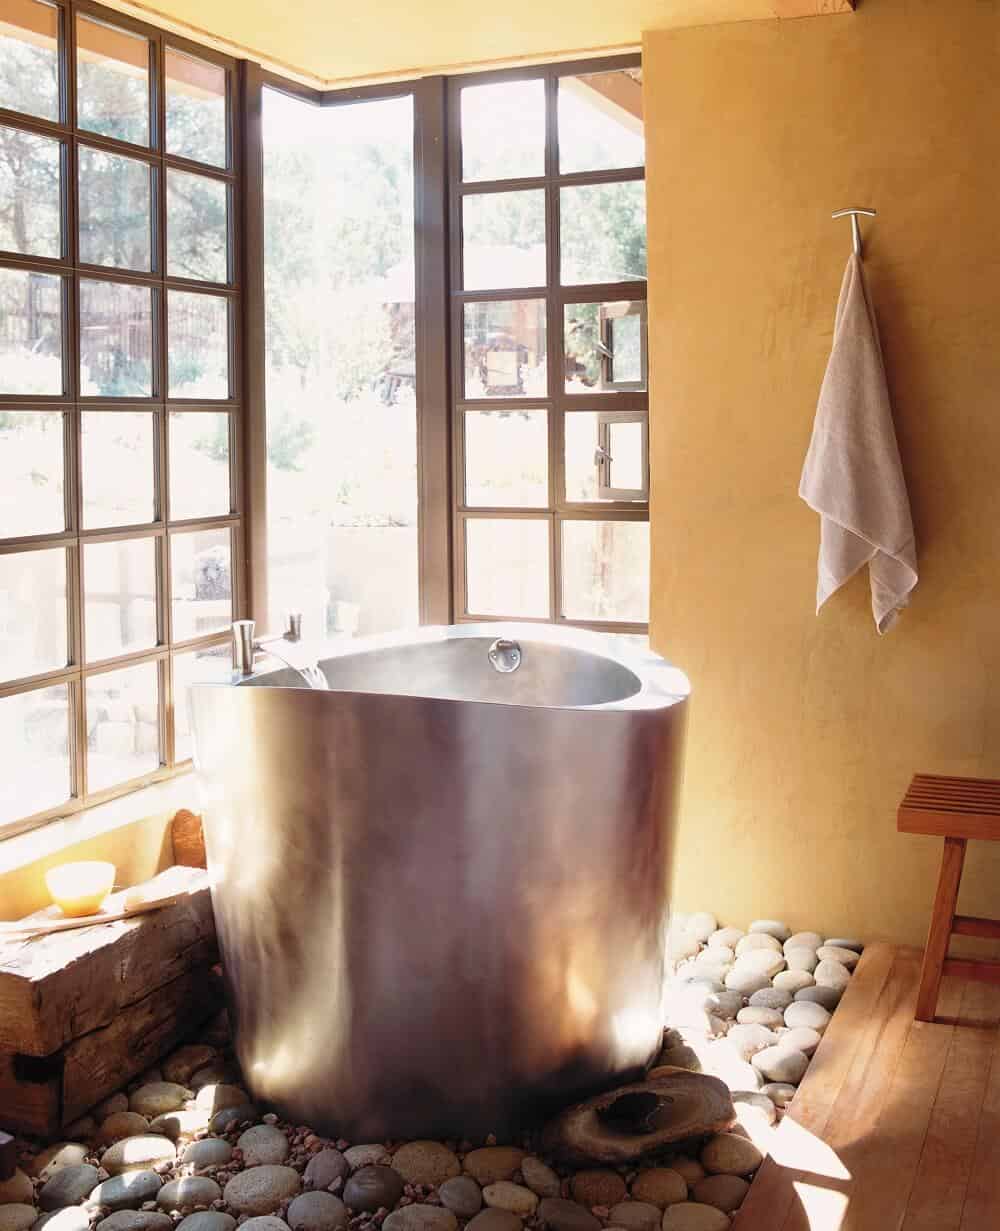 Stainless STeel Circular Japanese Soaking Tub